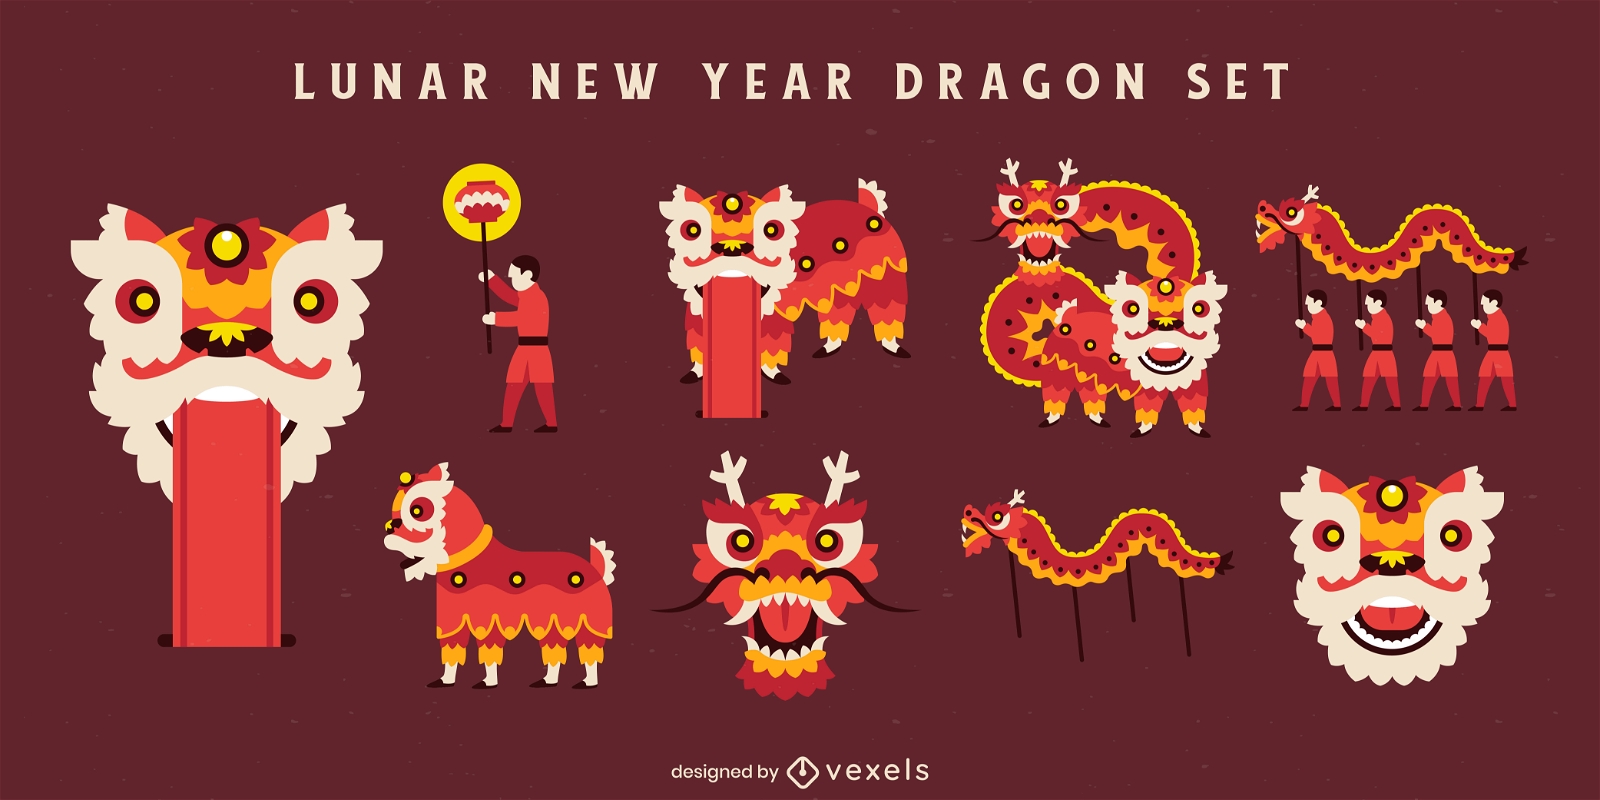 Lunar new year dragon elements set